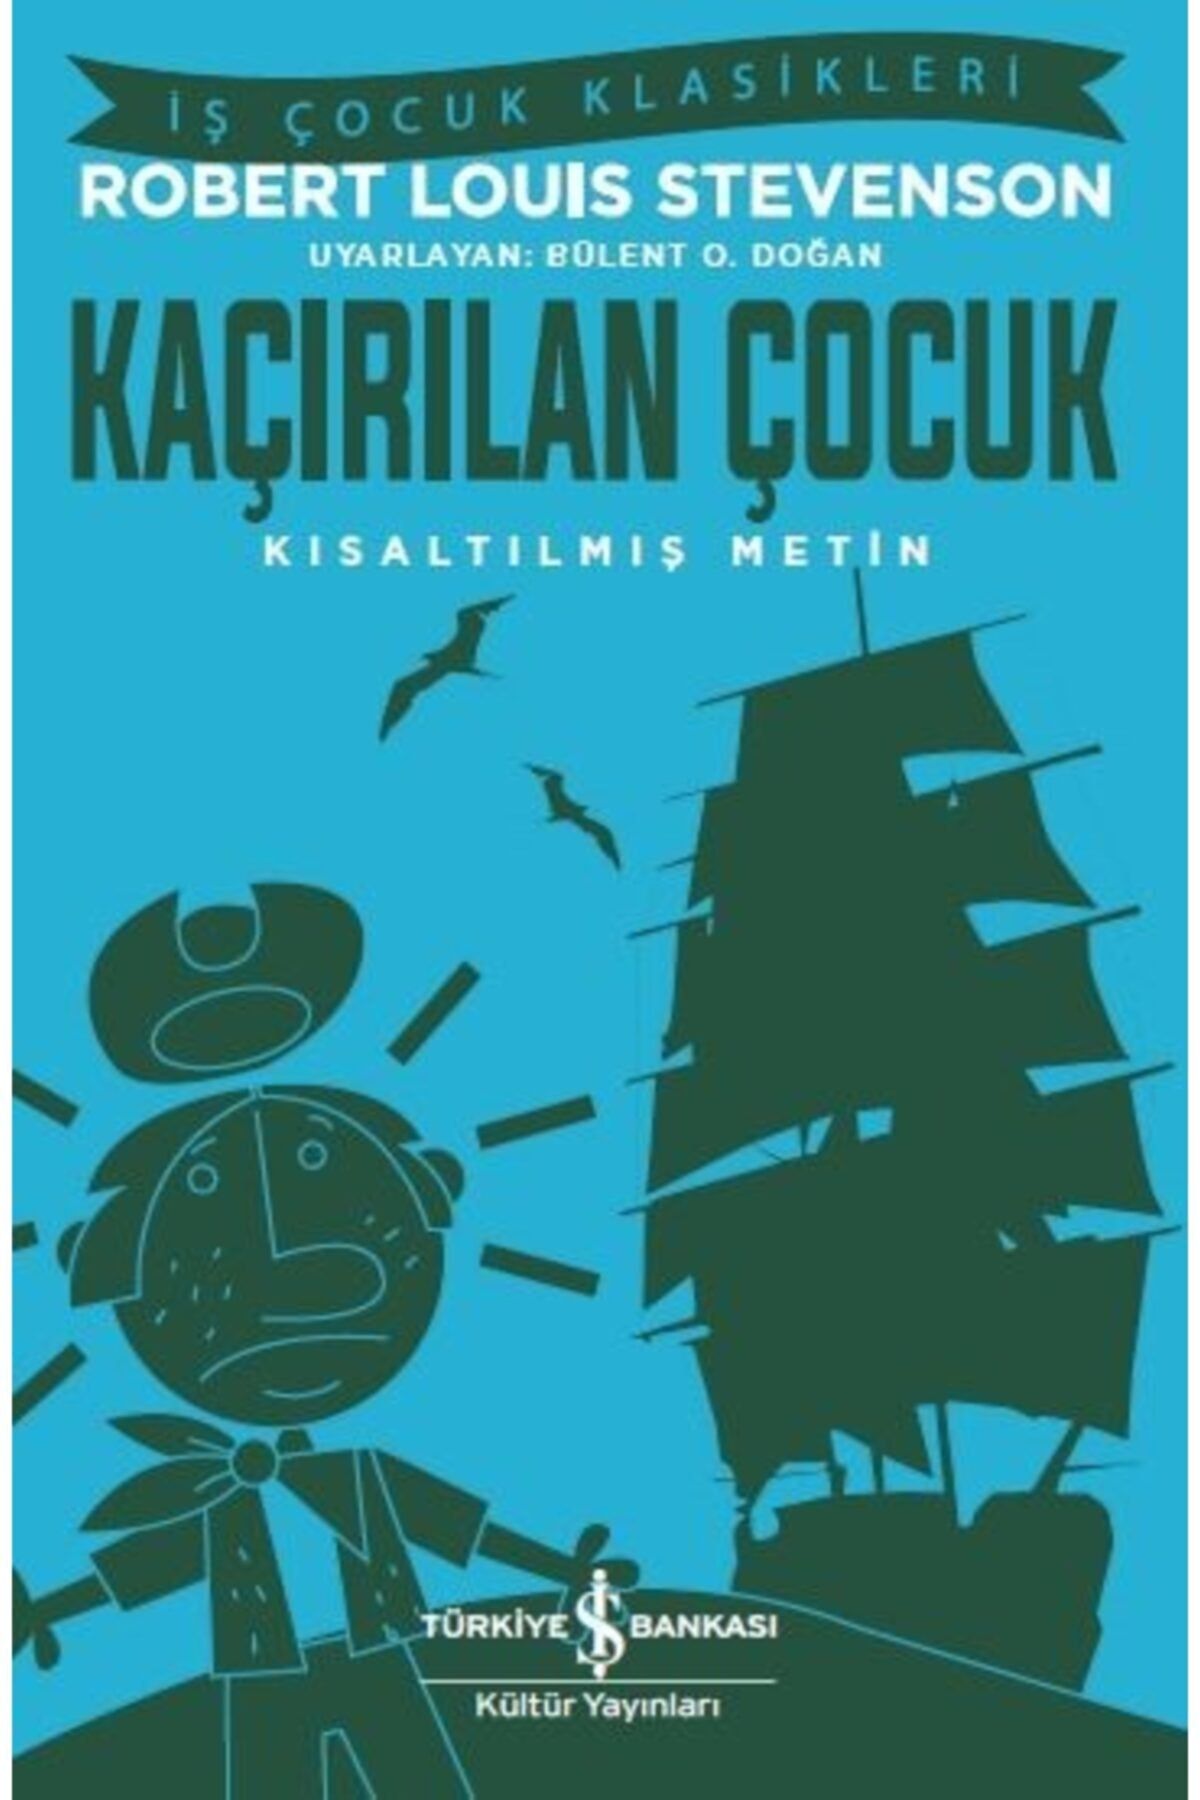 Türkiye İş Bankası Kültür Yayınları Kaçırılan Çocuk - İş Çocuk Klasikleri - Kısaltılmış Metin